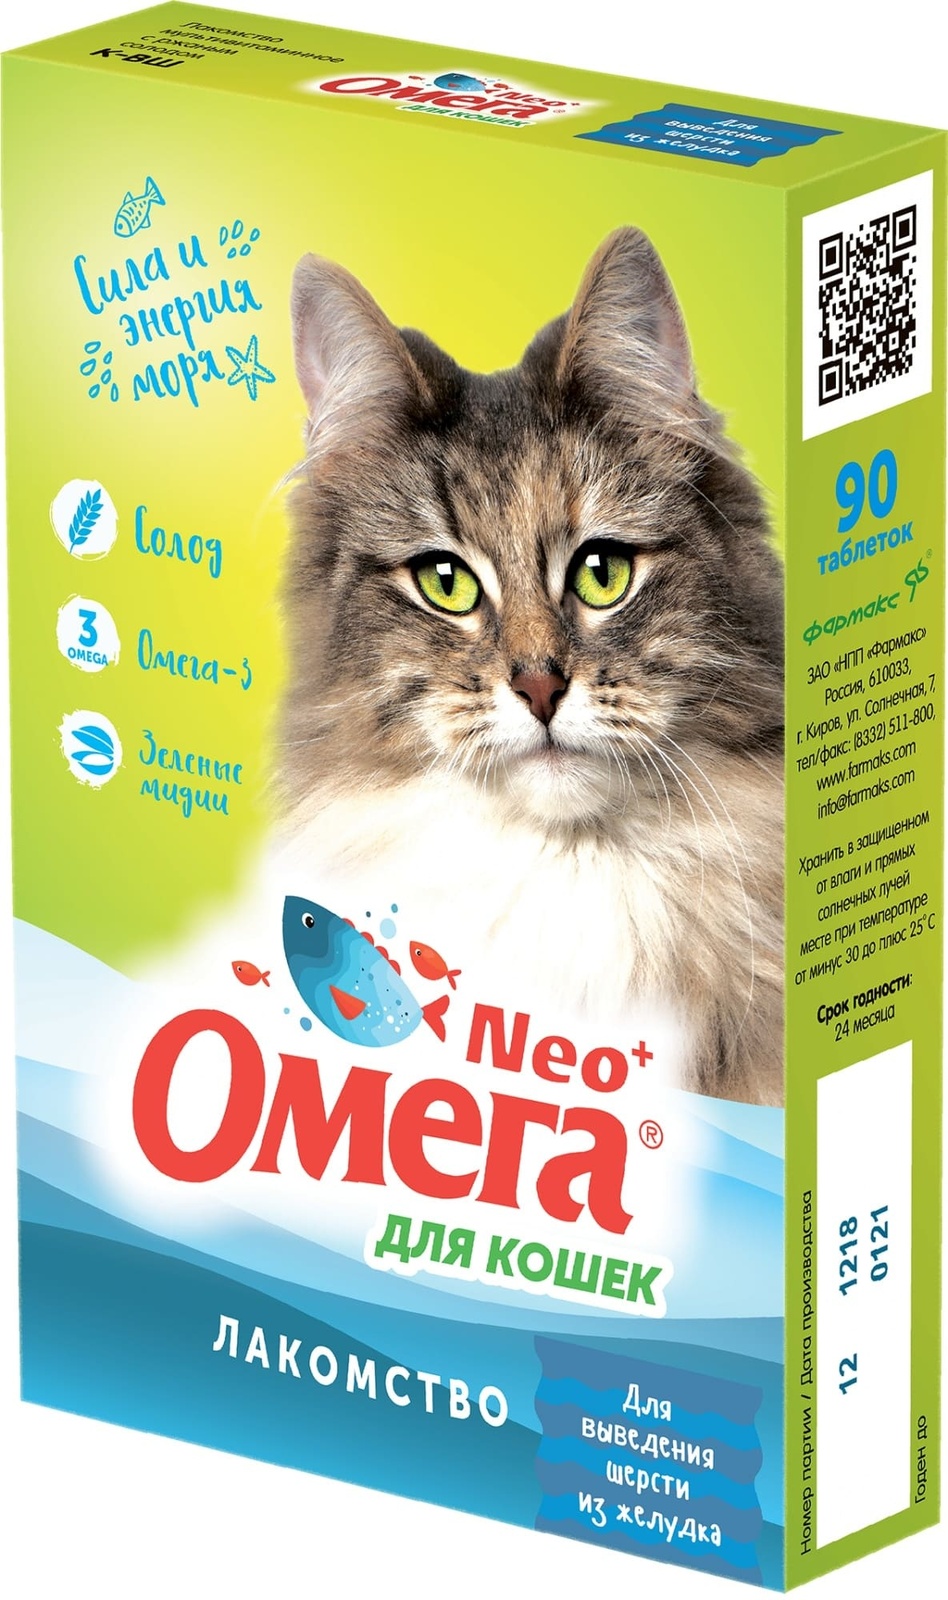 цена Фармакс Фармакс мультивитаминное лакомство Омега Neo+ Вывод шерсти с ржаным солодом для кошек (60 г)